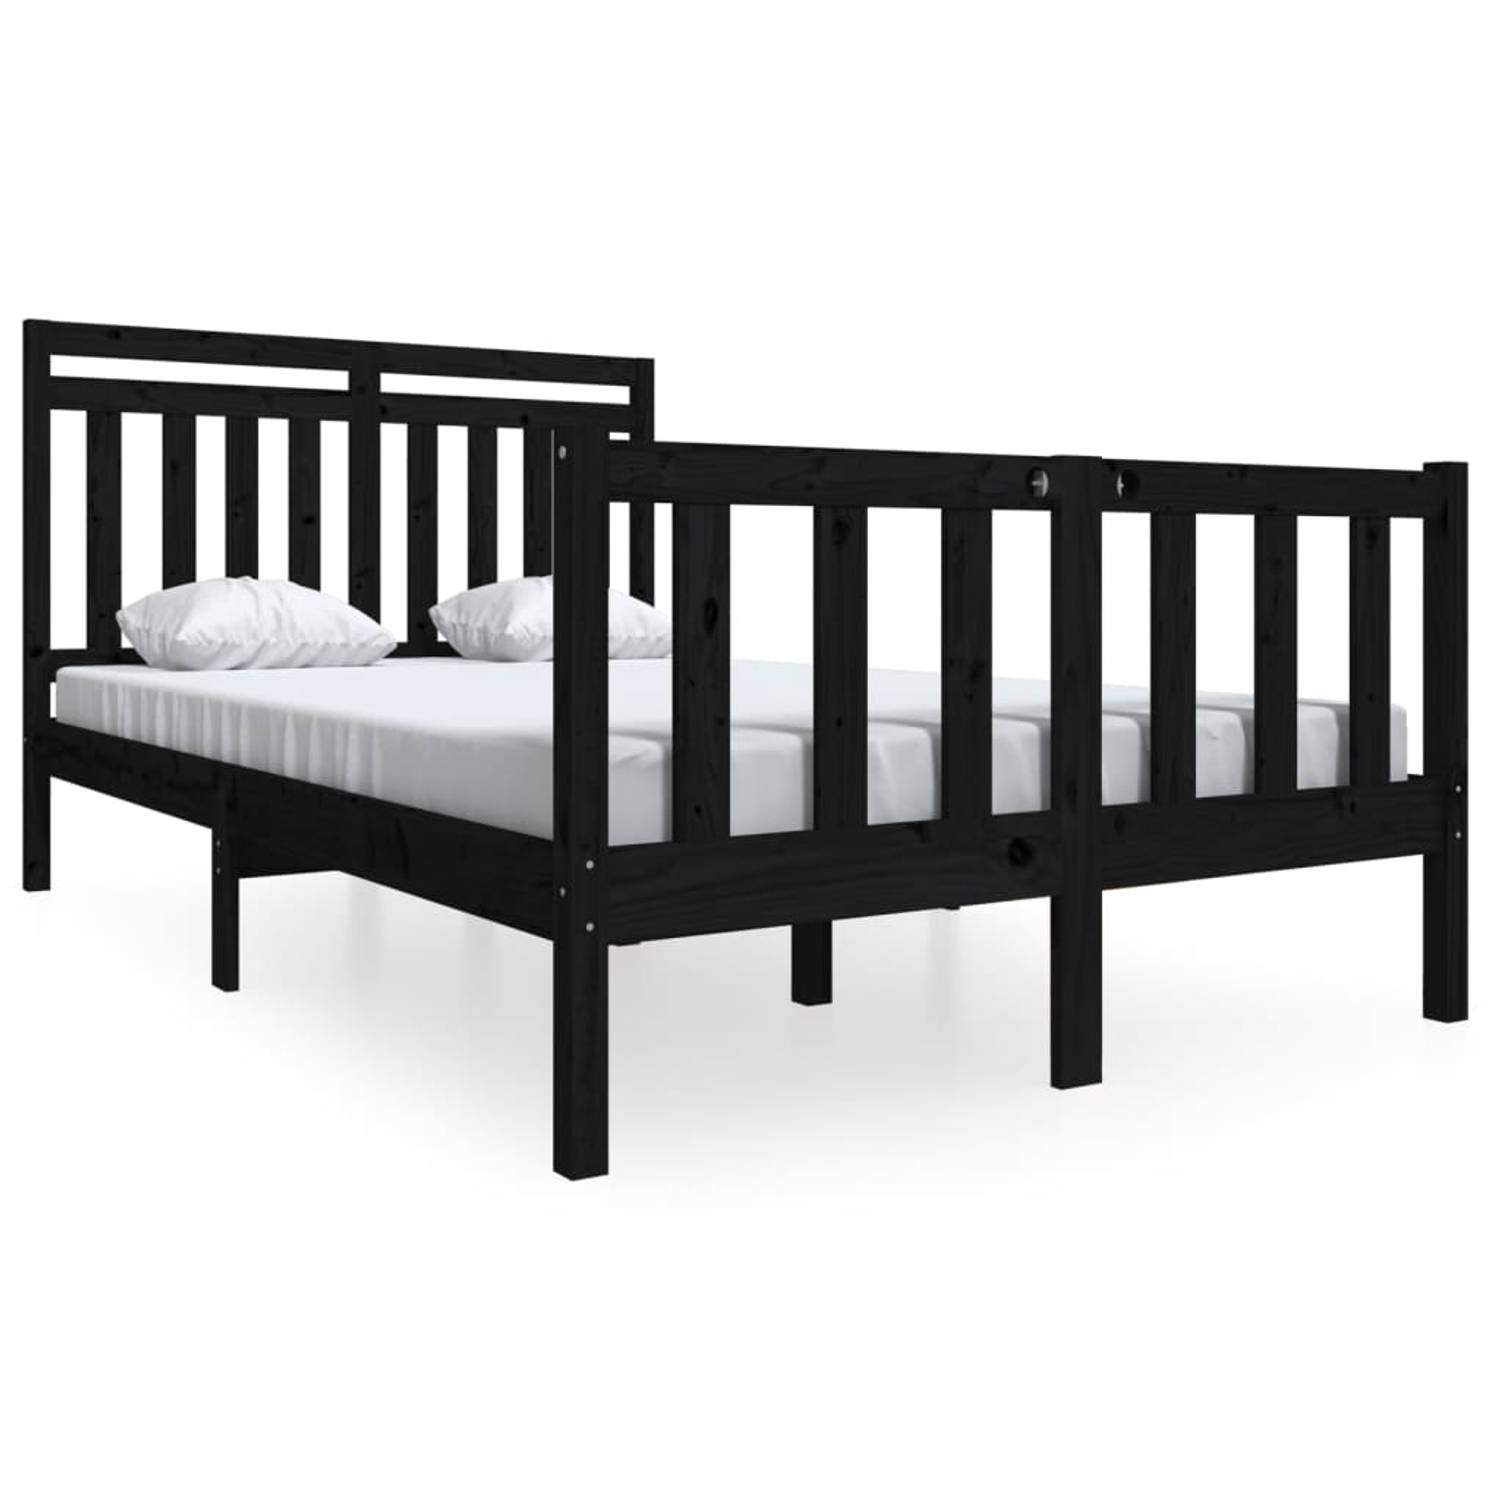 The Living Store Bedframe massief hout zwart 120x200 cm - Bedframe - Bedframes - Tweepersoonsbed - Bed - Bedombouw - Dubbel Bed - Frame - Bed Frame - Ledikant - Bedframe Met Hoofde